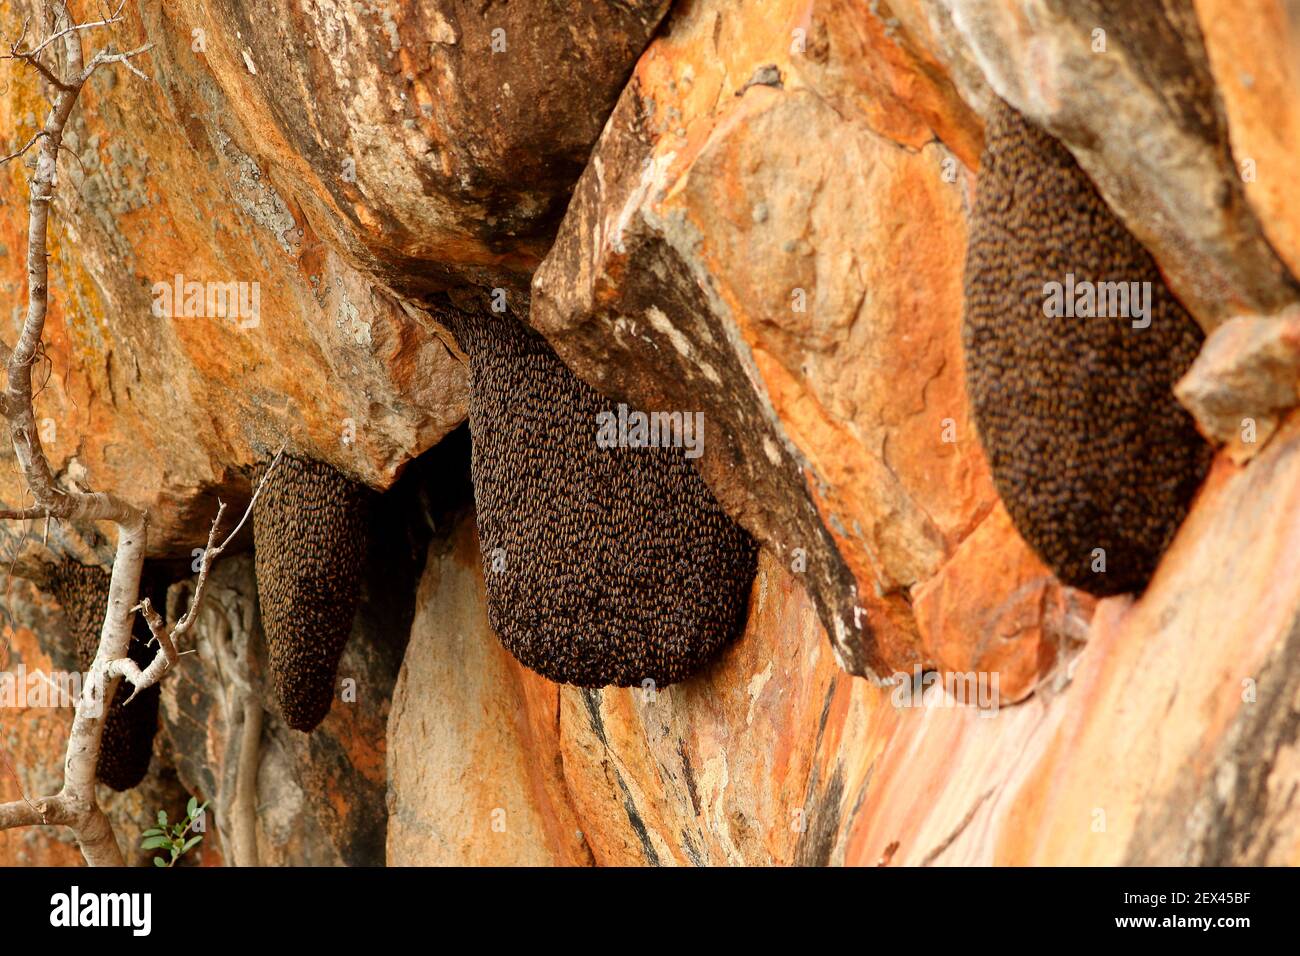 Abeja de miel oriental (Apis cerana) panales de miel colgados de un acantilado, Sri Lanka Foto de stock